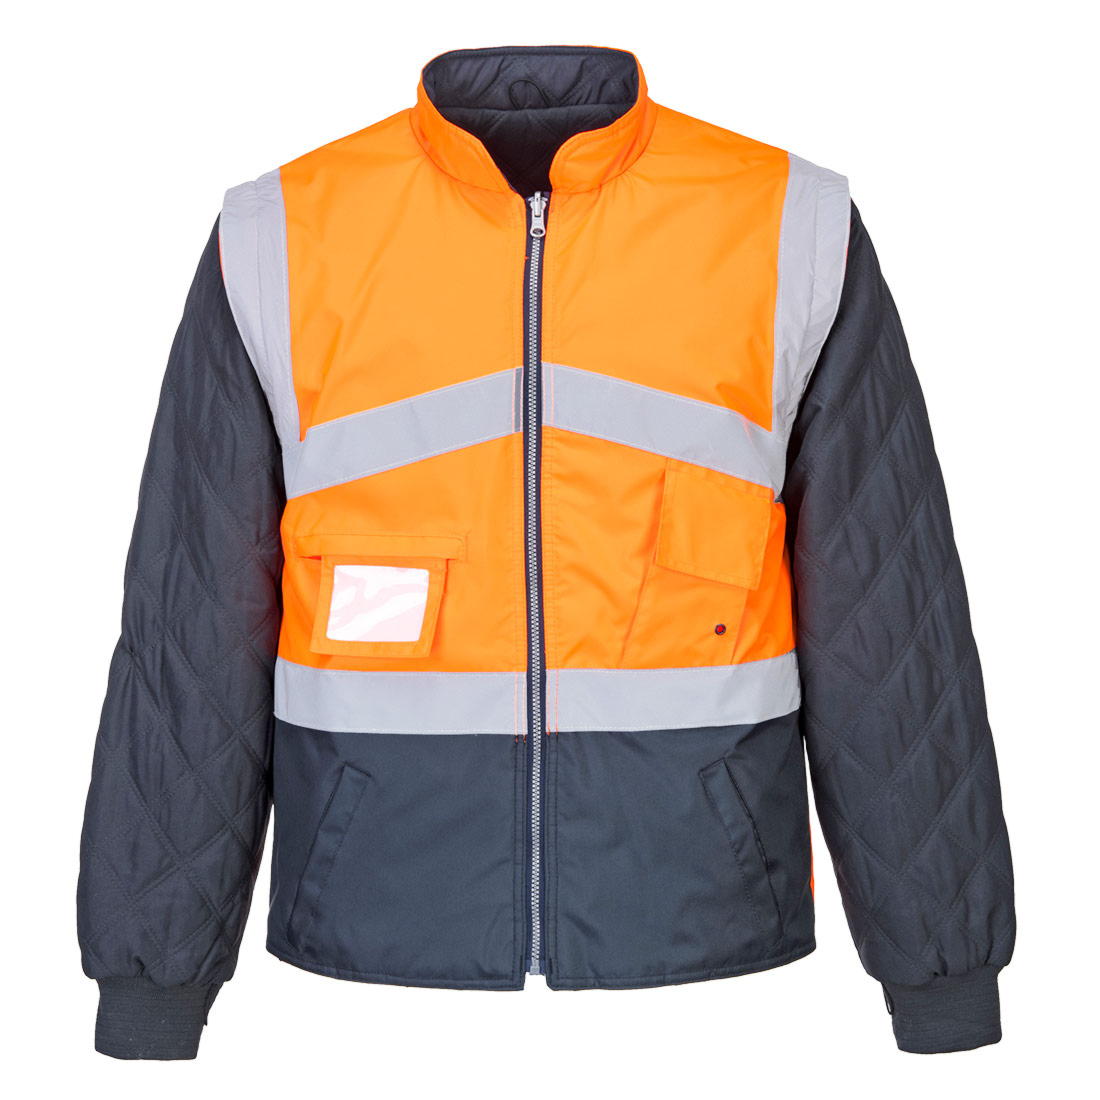 Куртка S769, цвет оранжевый/синий 2 в 1, съемные рукава